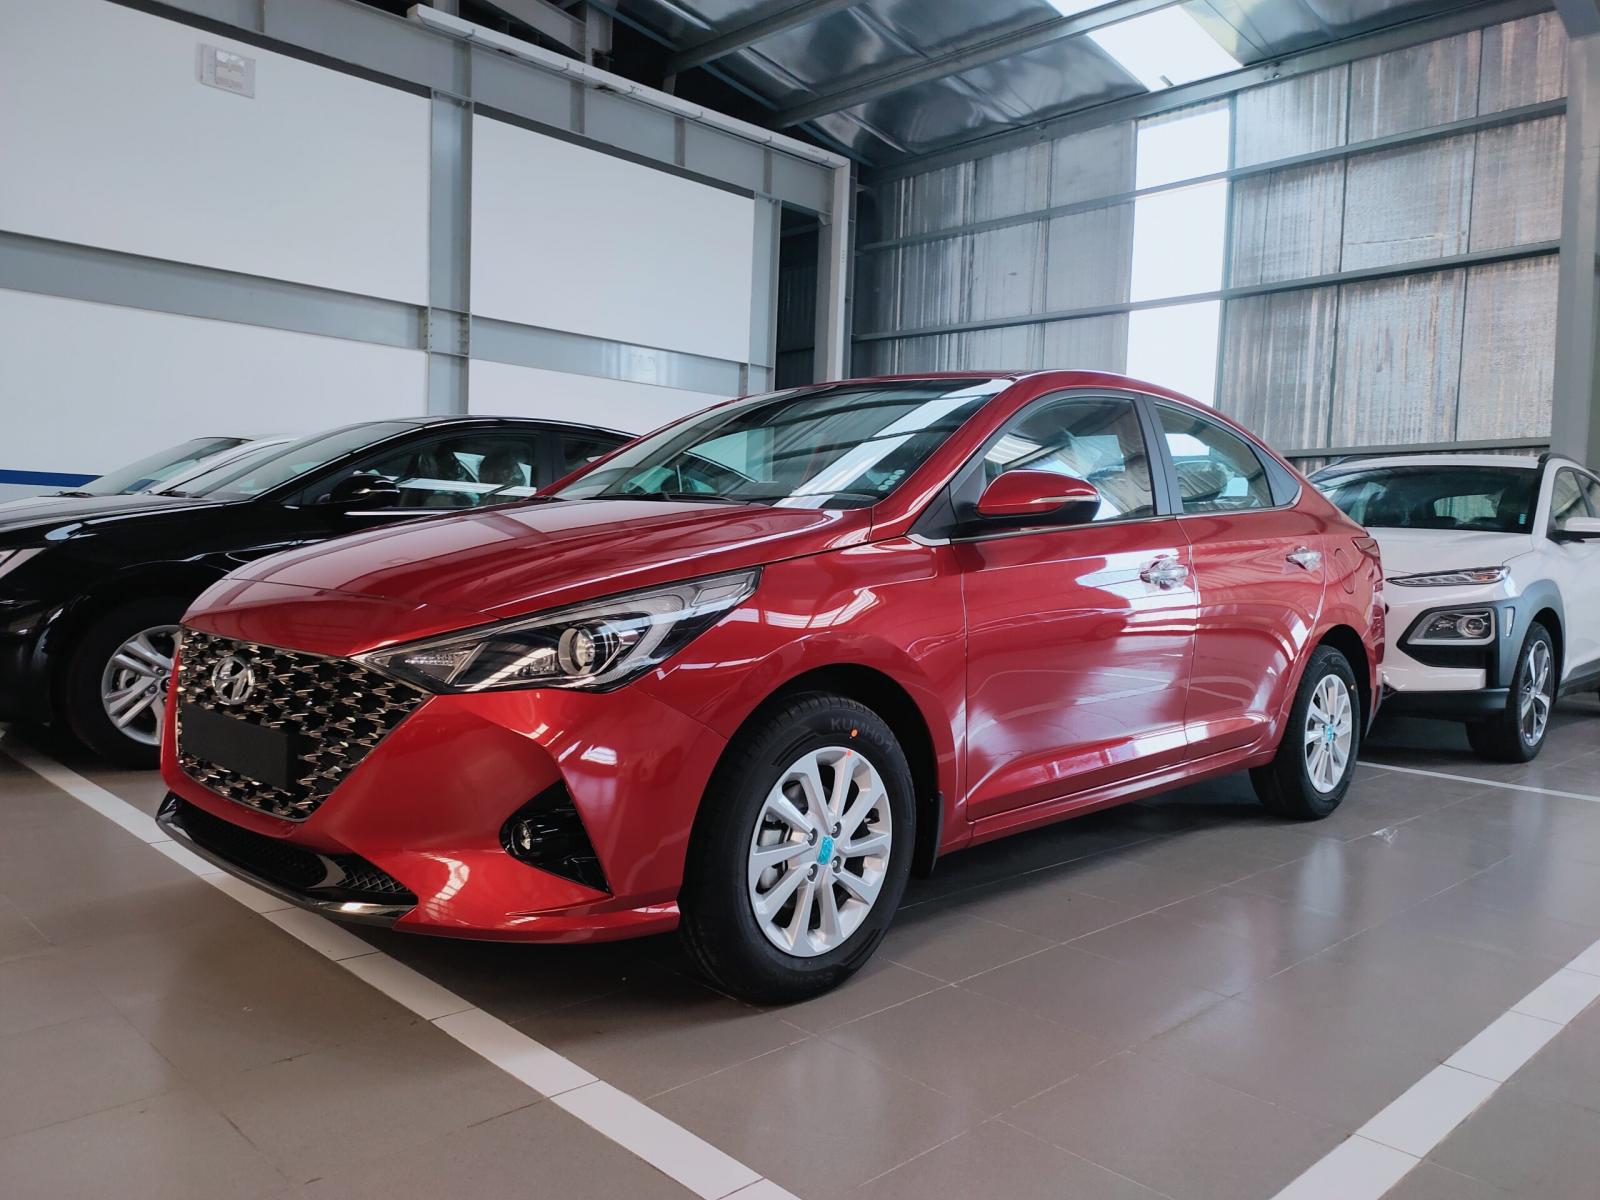 Hyundai Accent 1.4 AT TIÊU CHUẨN 2022 - BÁN ACCENT AT XE SẴN GIAO NGAY GIÁ ƯU ĐÃI HƠN 40 TRIỆU